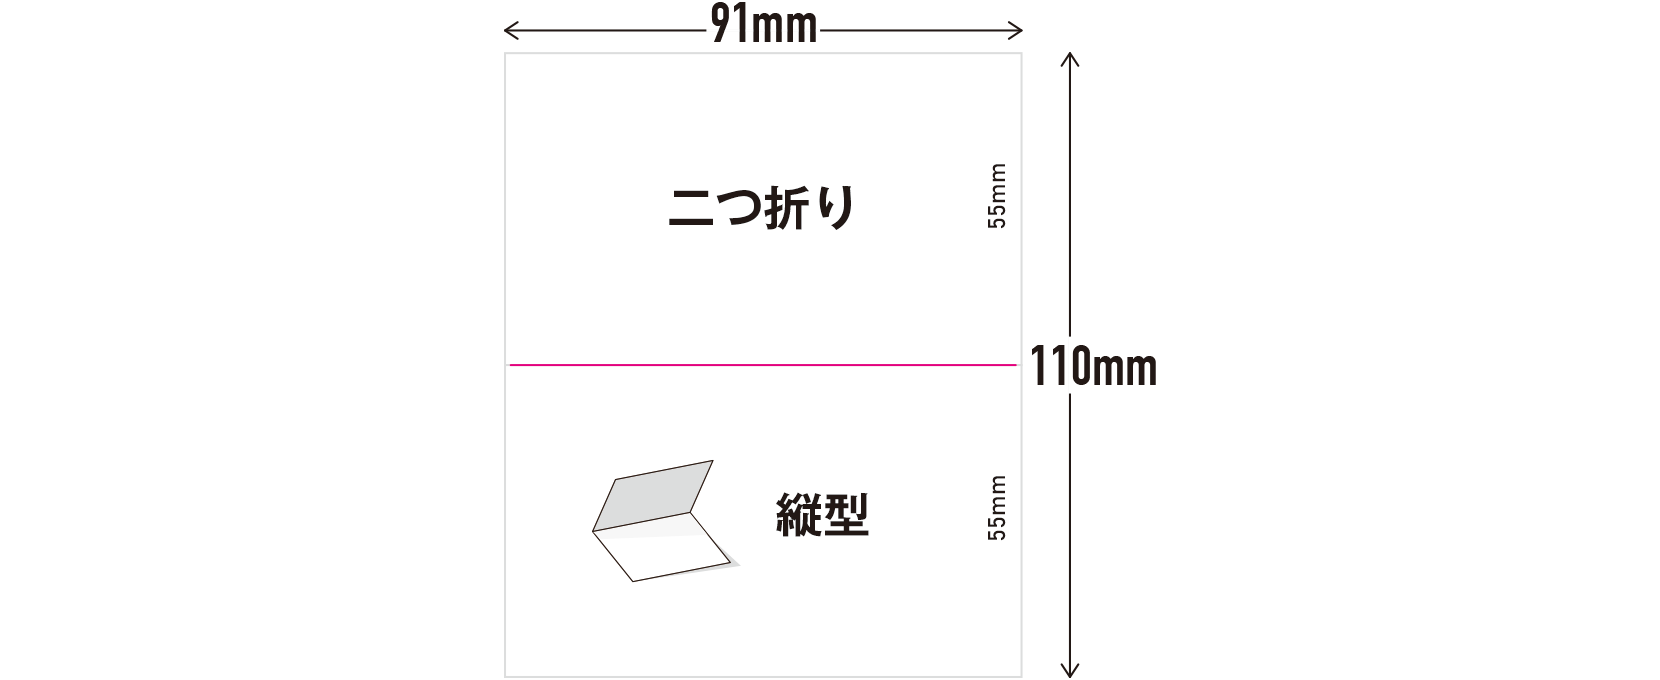 2つ折り 縦型サイズ（91×110mm）